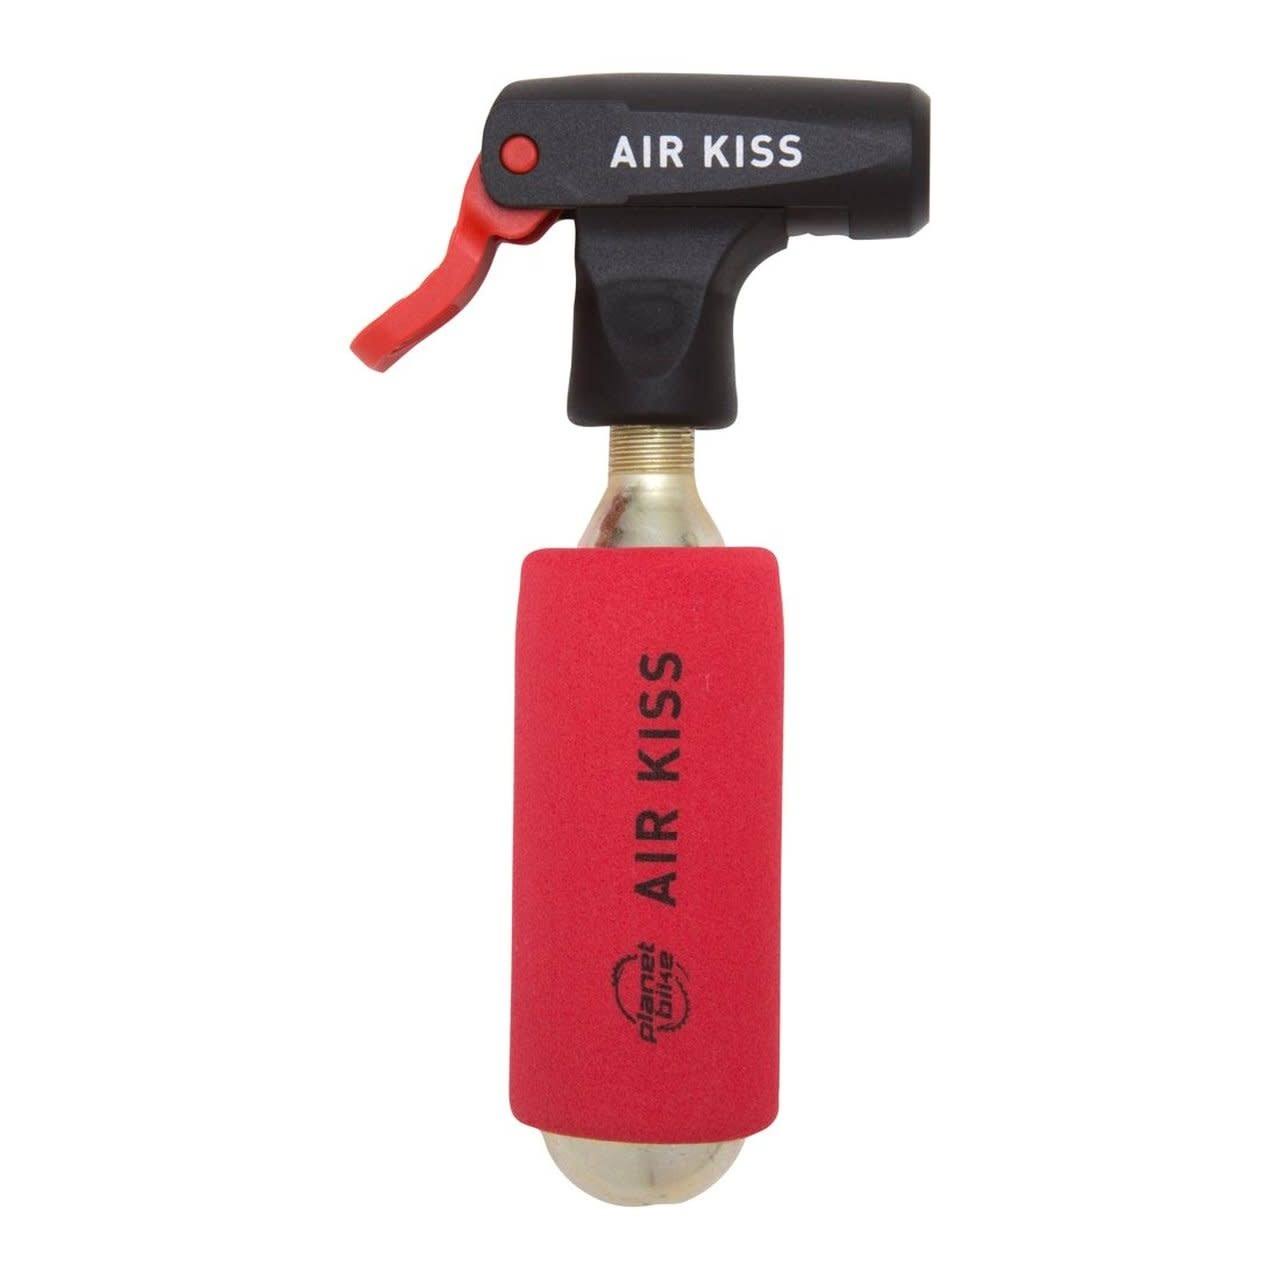 Planet Bike Air Kiss CO2 Bike Tire Inflator - Red